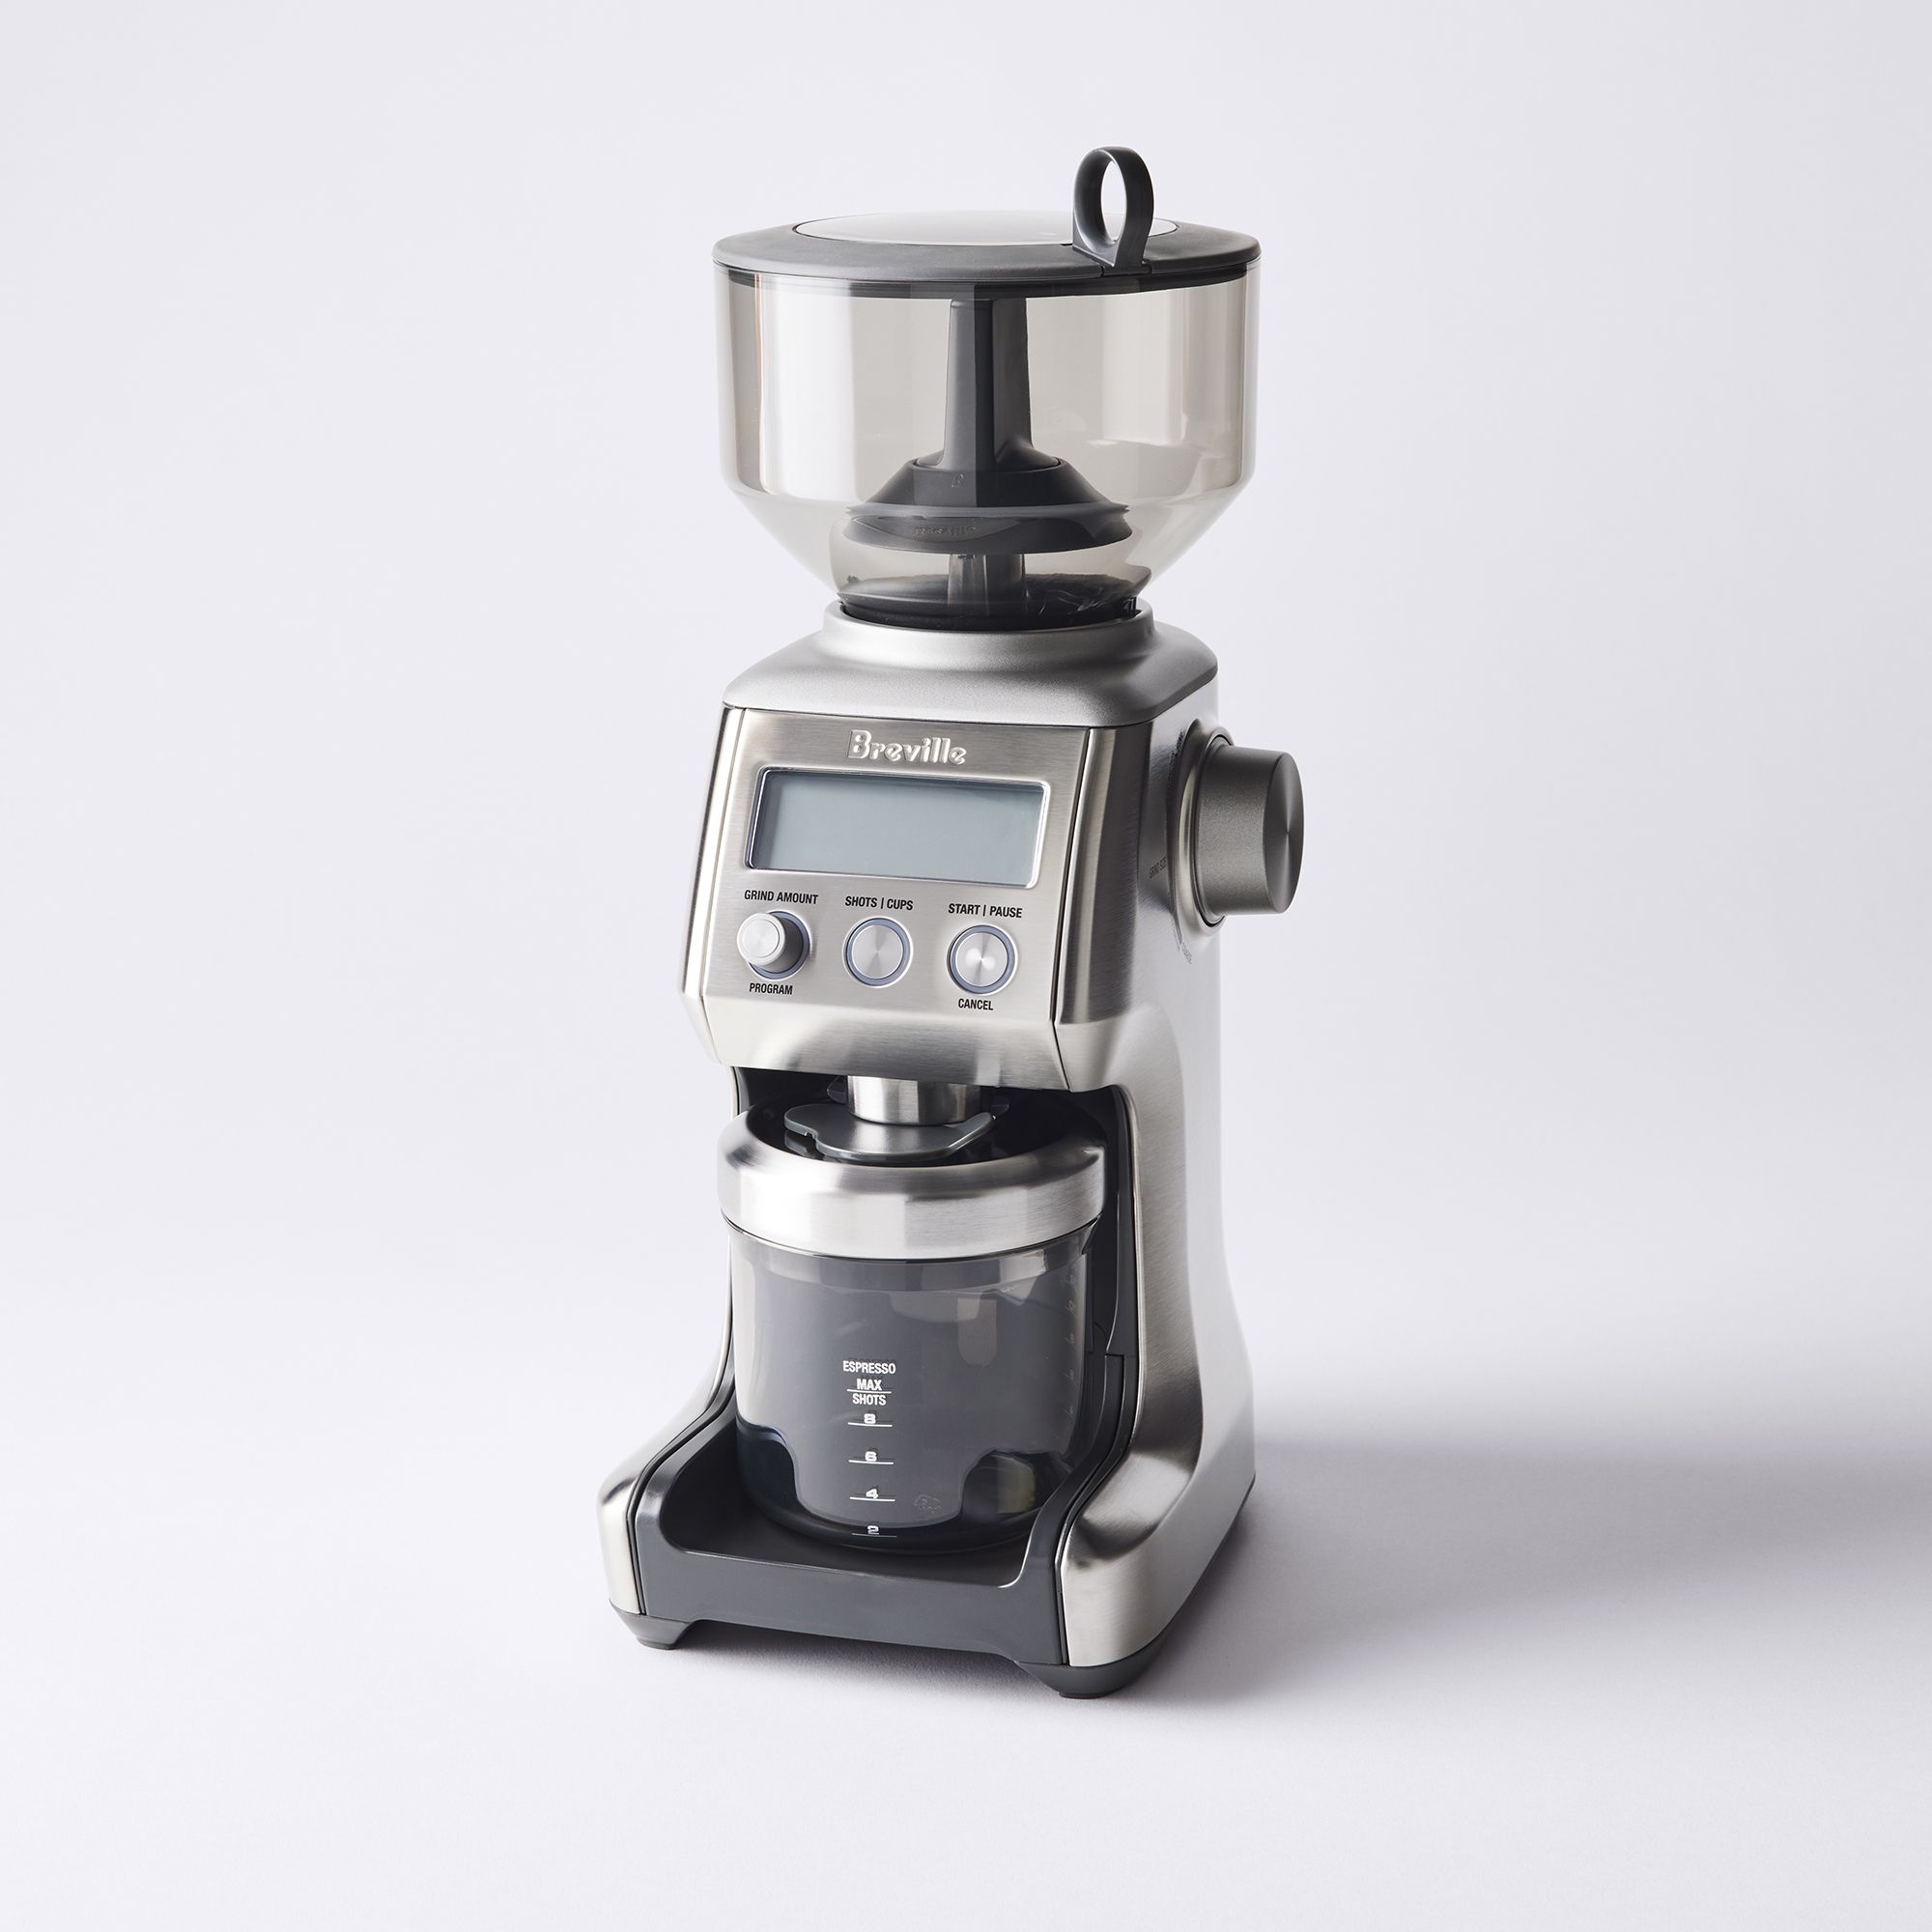 Breville Smart Coffee Grinder Pro - appliances - by owner - sale -  craigslist